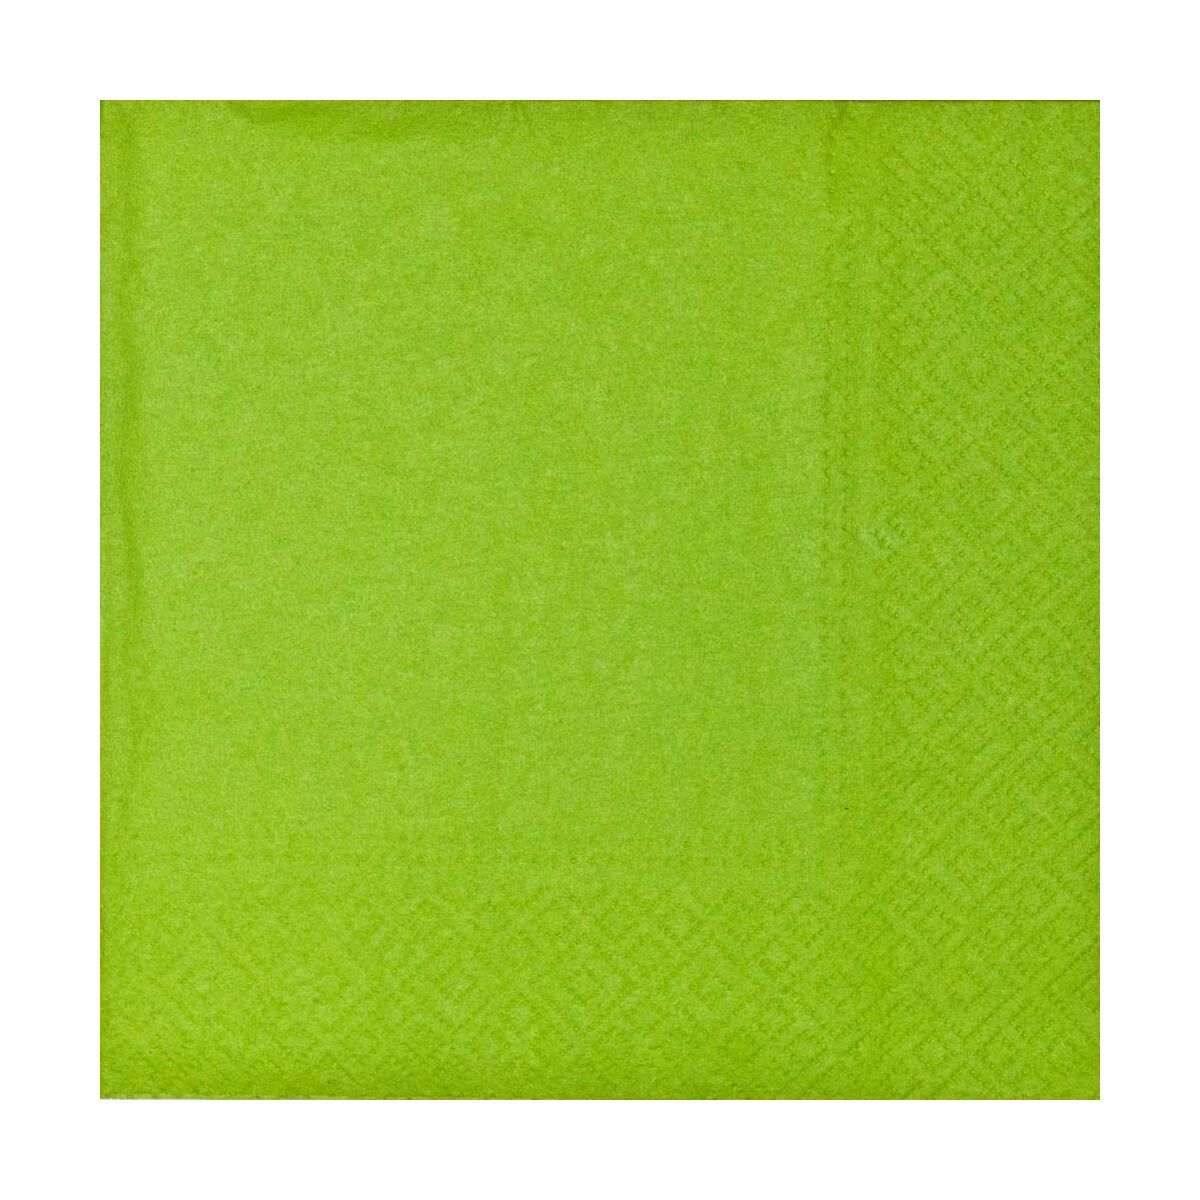 Serwetki Unicolor zielone 33 x 33 cm 20 szt.